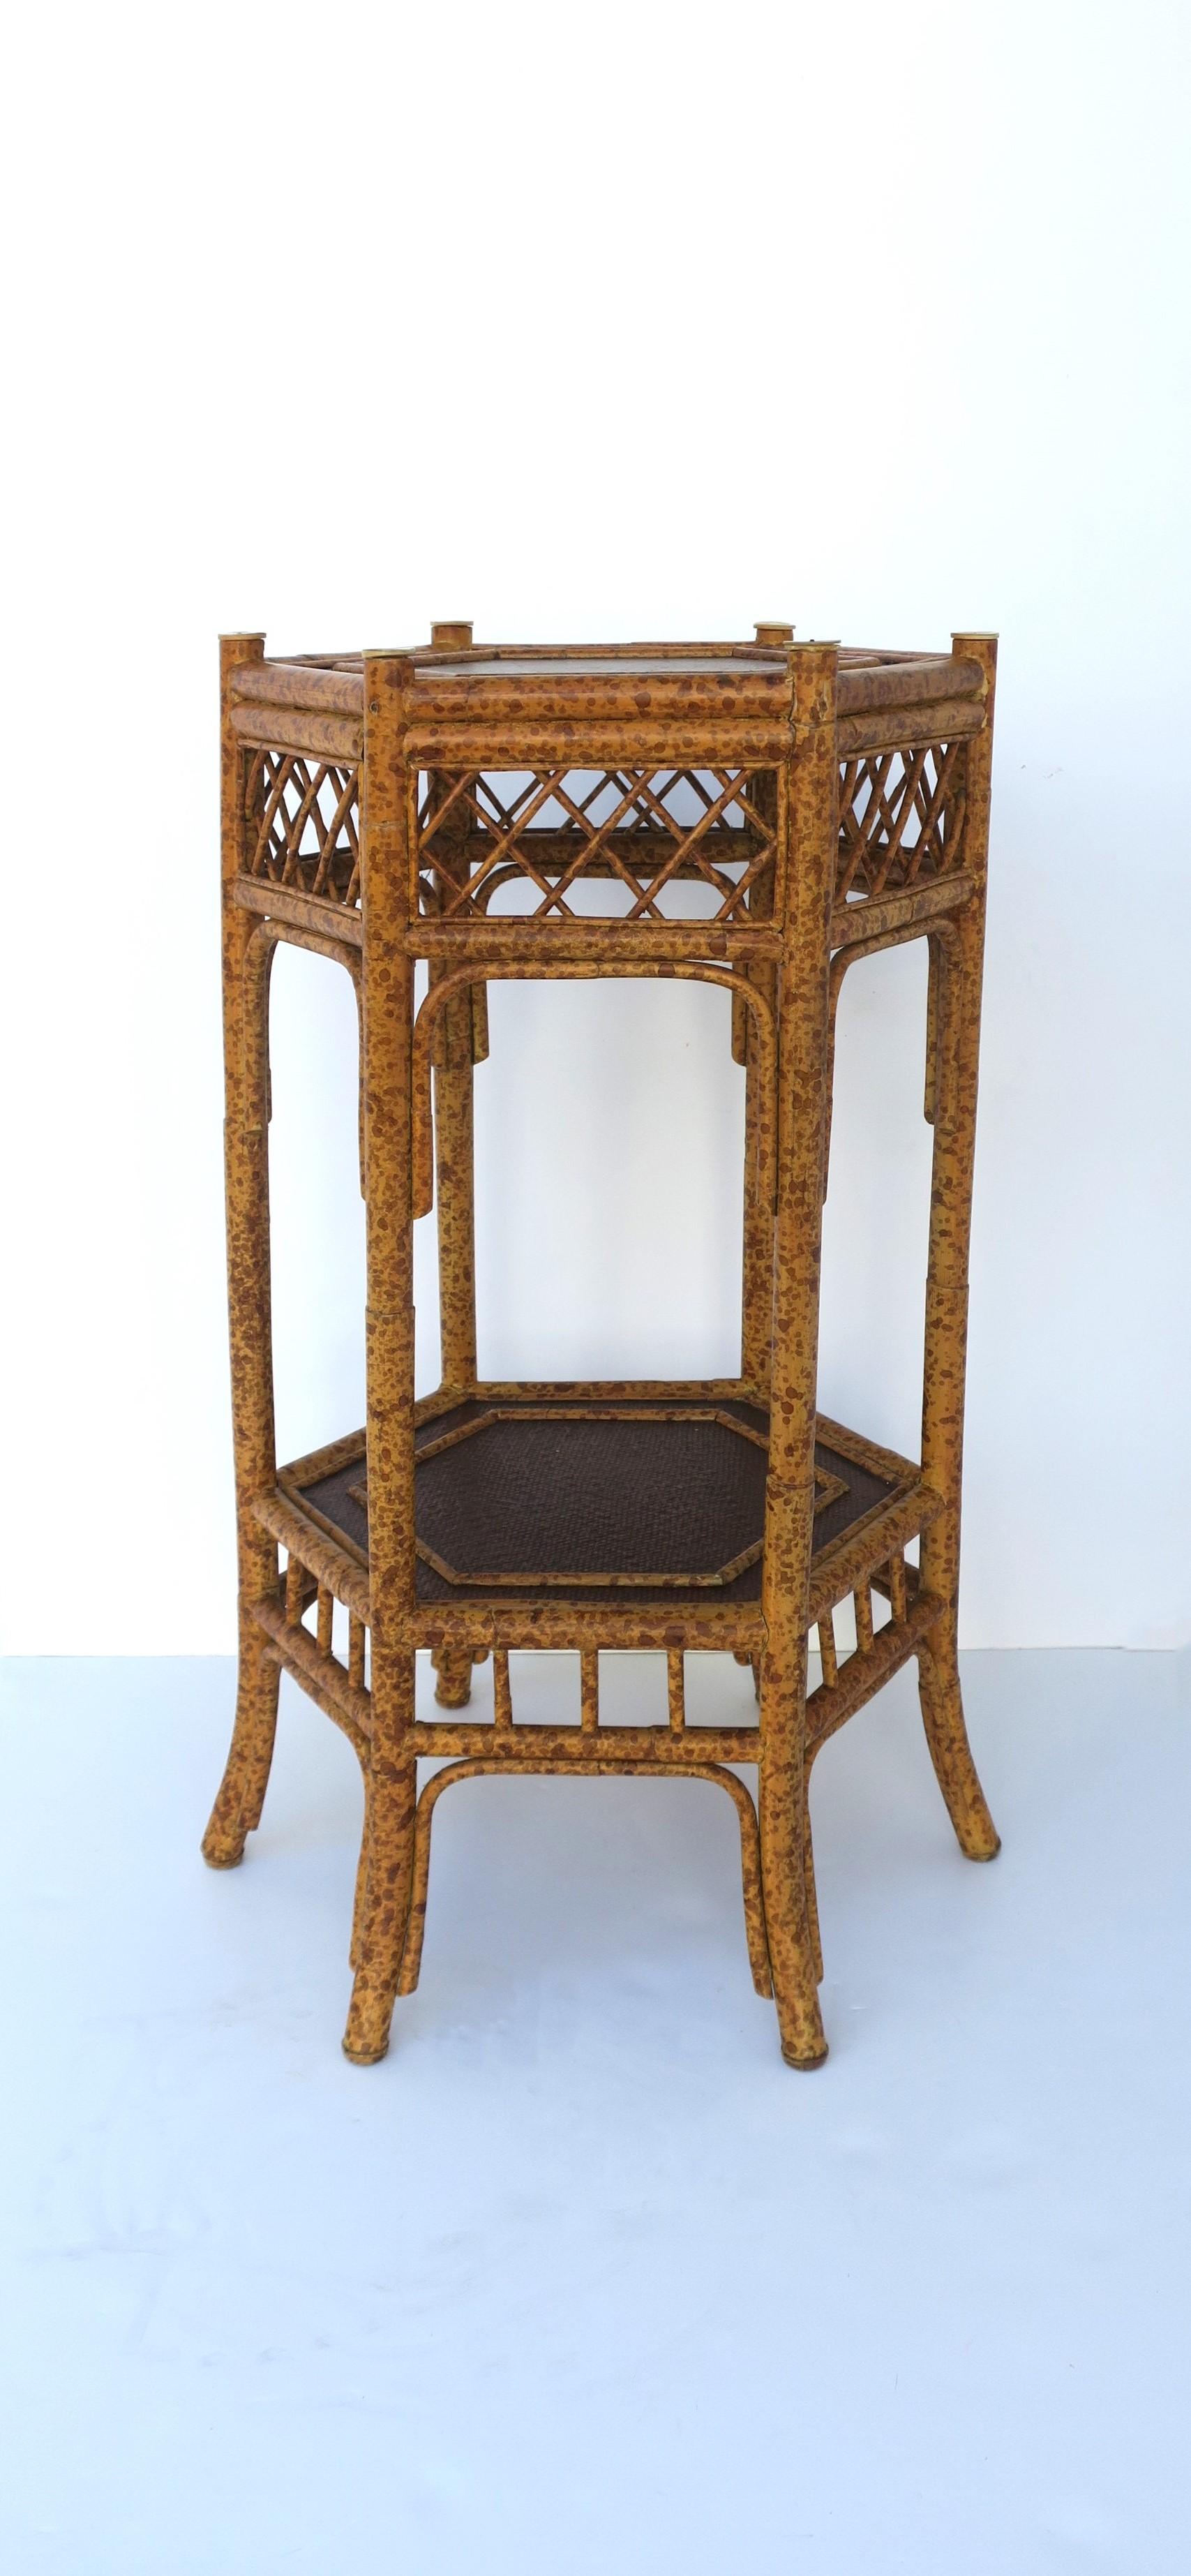 Table d'appoint en faux bambou de forme hexagonale avec plateau inférieur, par la maison de design Maitland-Smith, vers la fin du 20e siècle. La table d'appoint a une forme hexagonale et une teinte bicolore ; faux bambou tan/marron clair et un